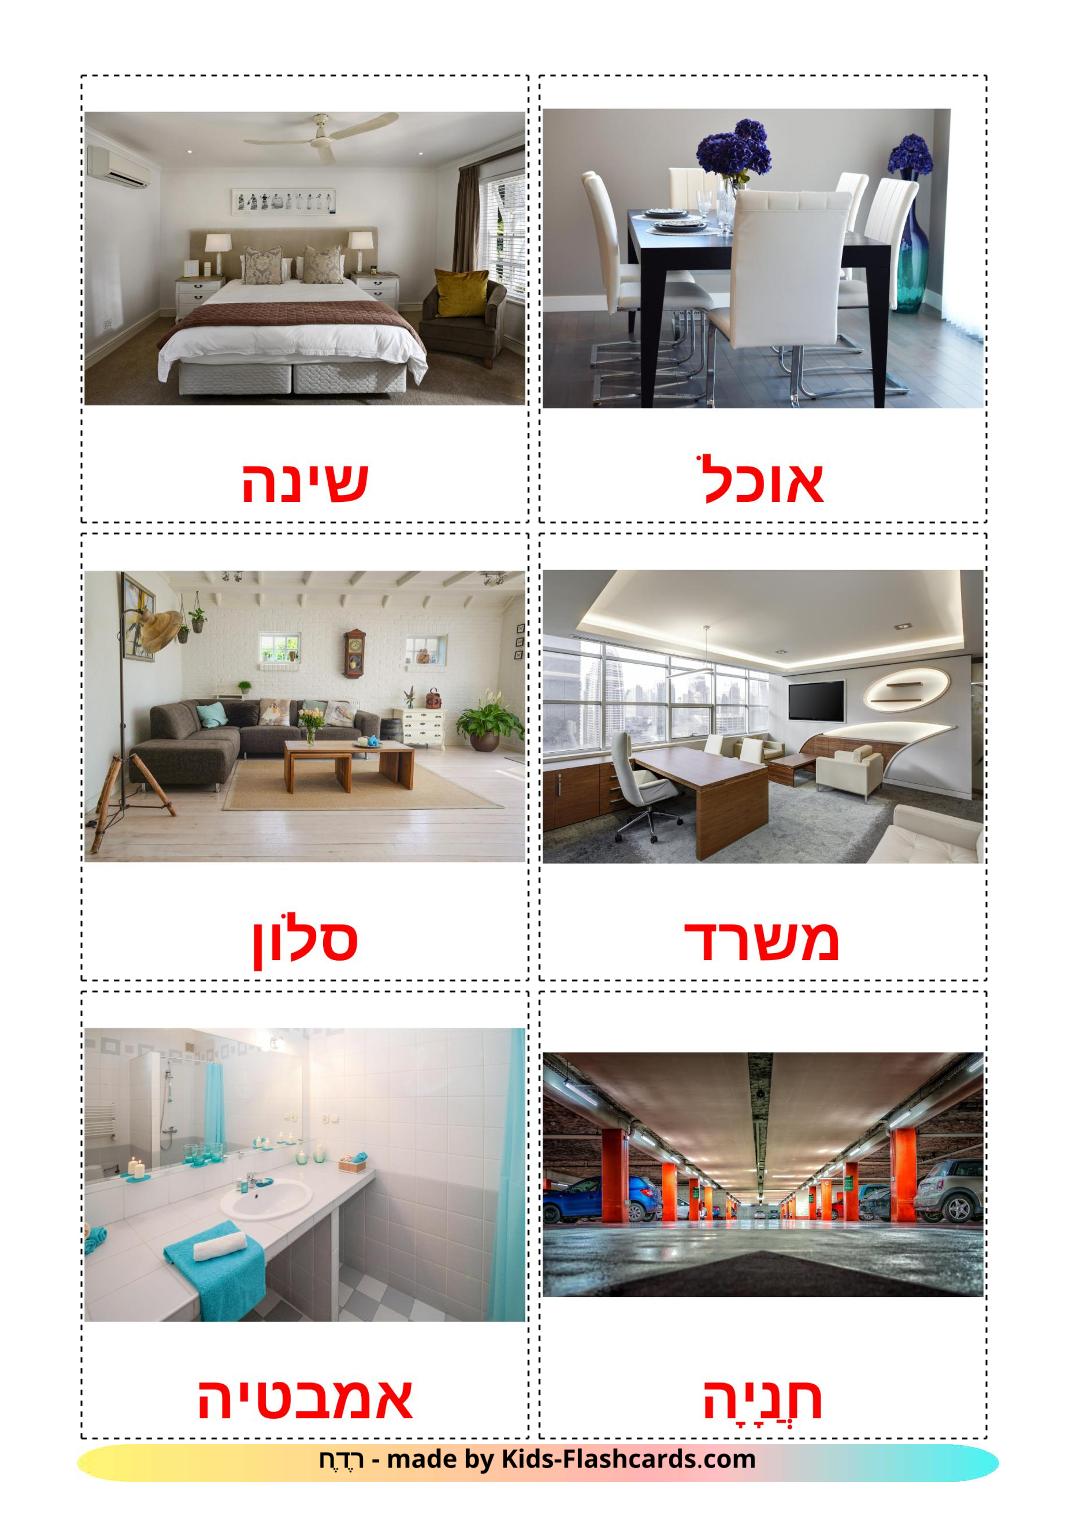 Habitaciones  - 17 fichas de hebreo para imprimir gratis 